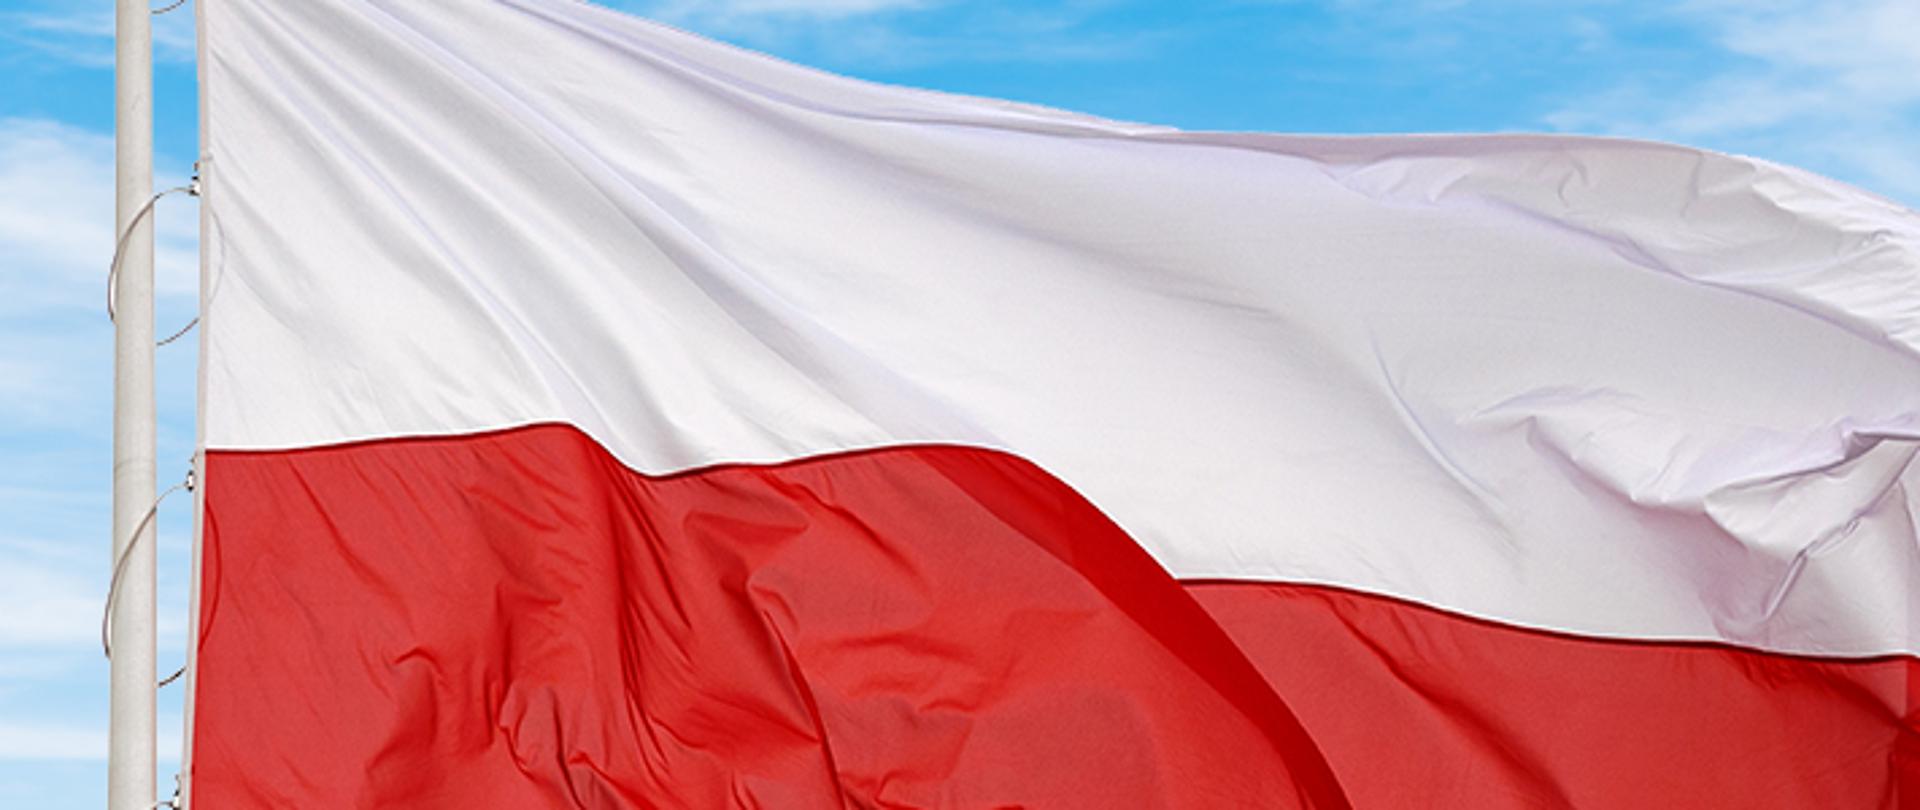 Flaga Narodowa Rzeczypospolitej Polskiej powiewa na maszcie na tle błękitnego nieba.